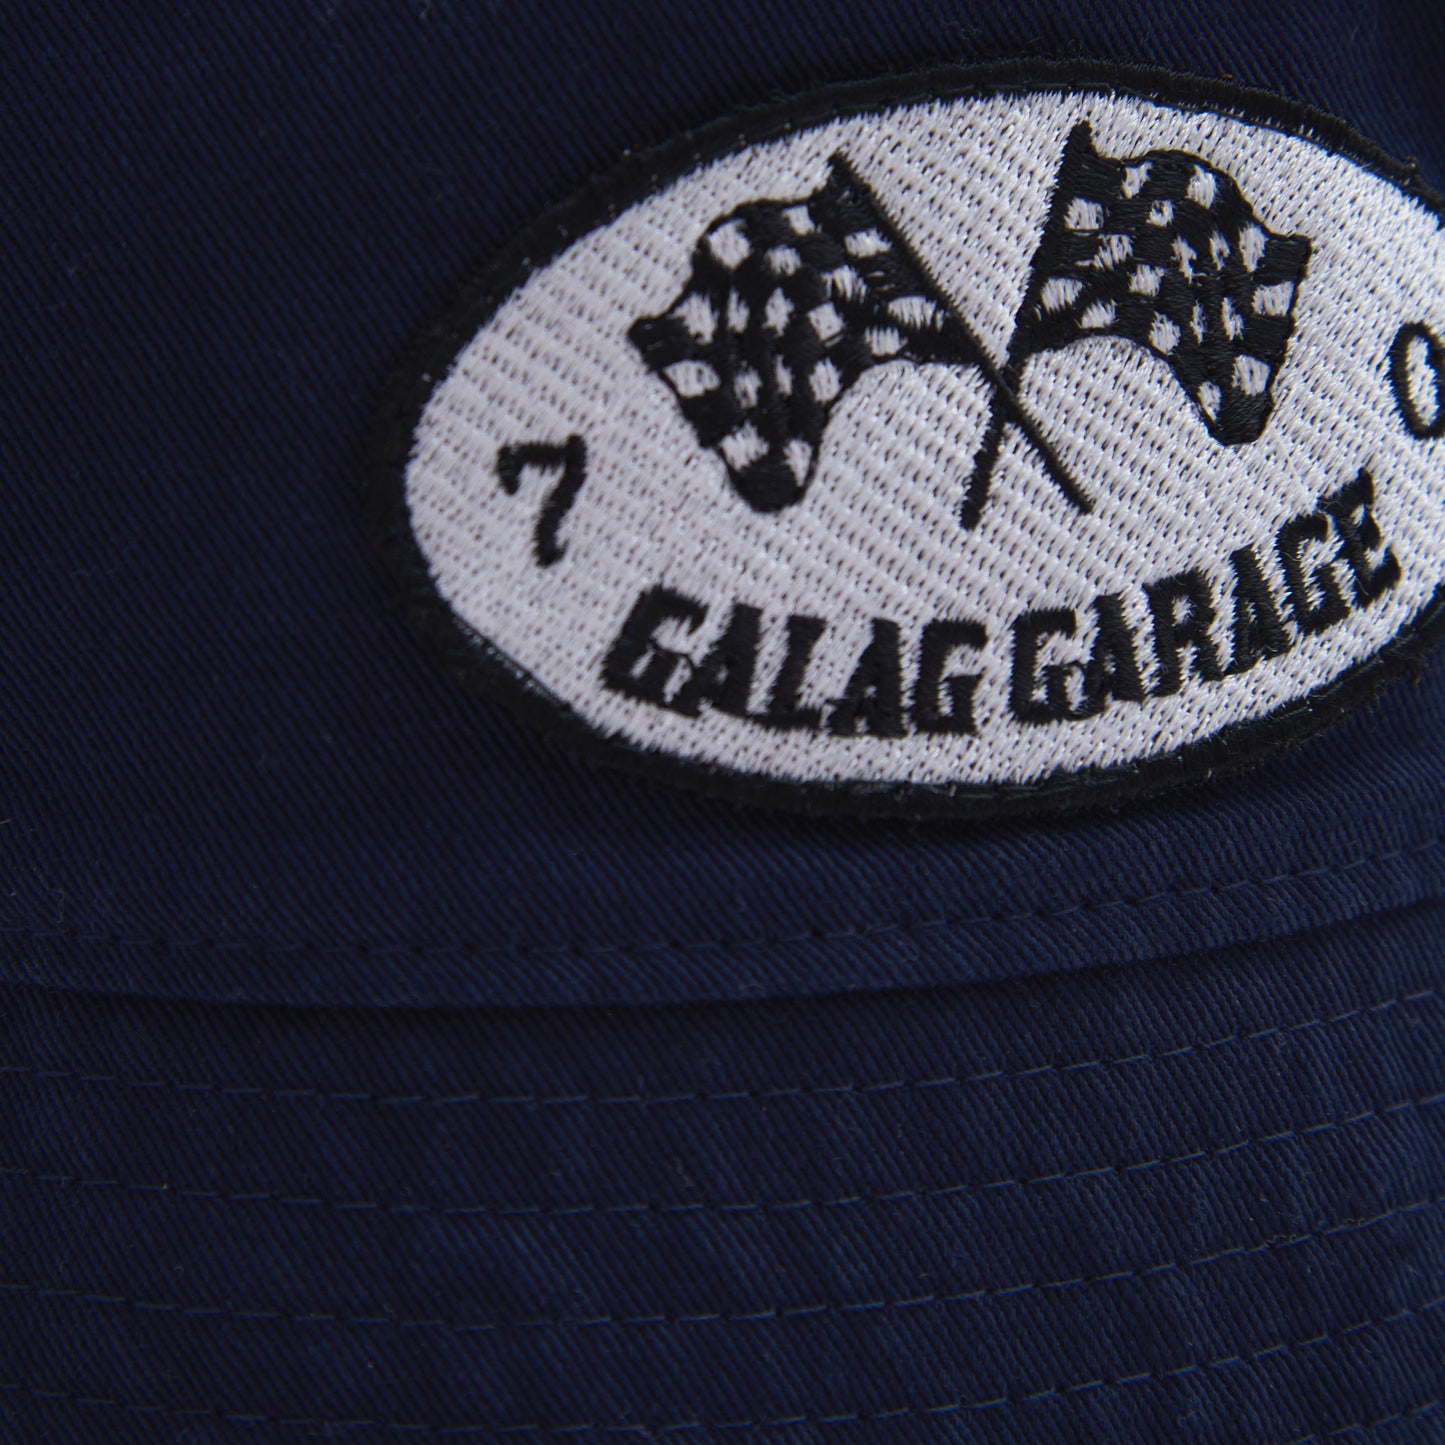 GALAG GARAGE BUCKET HAT - NAVY